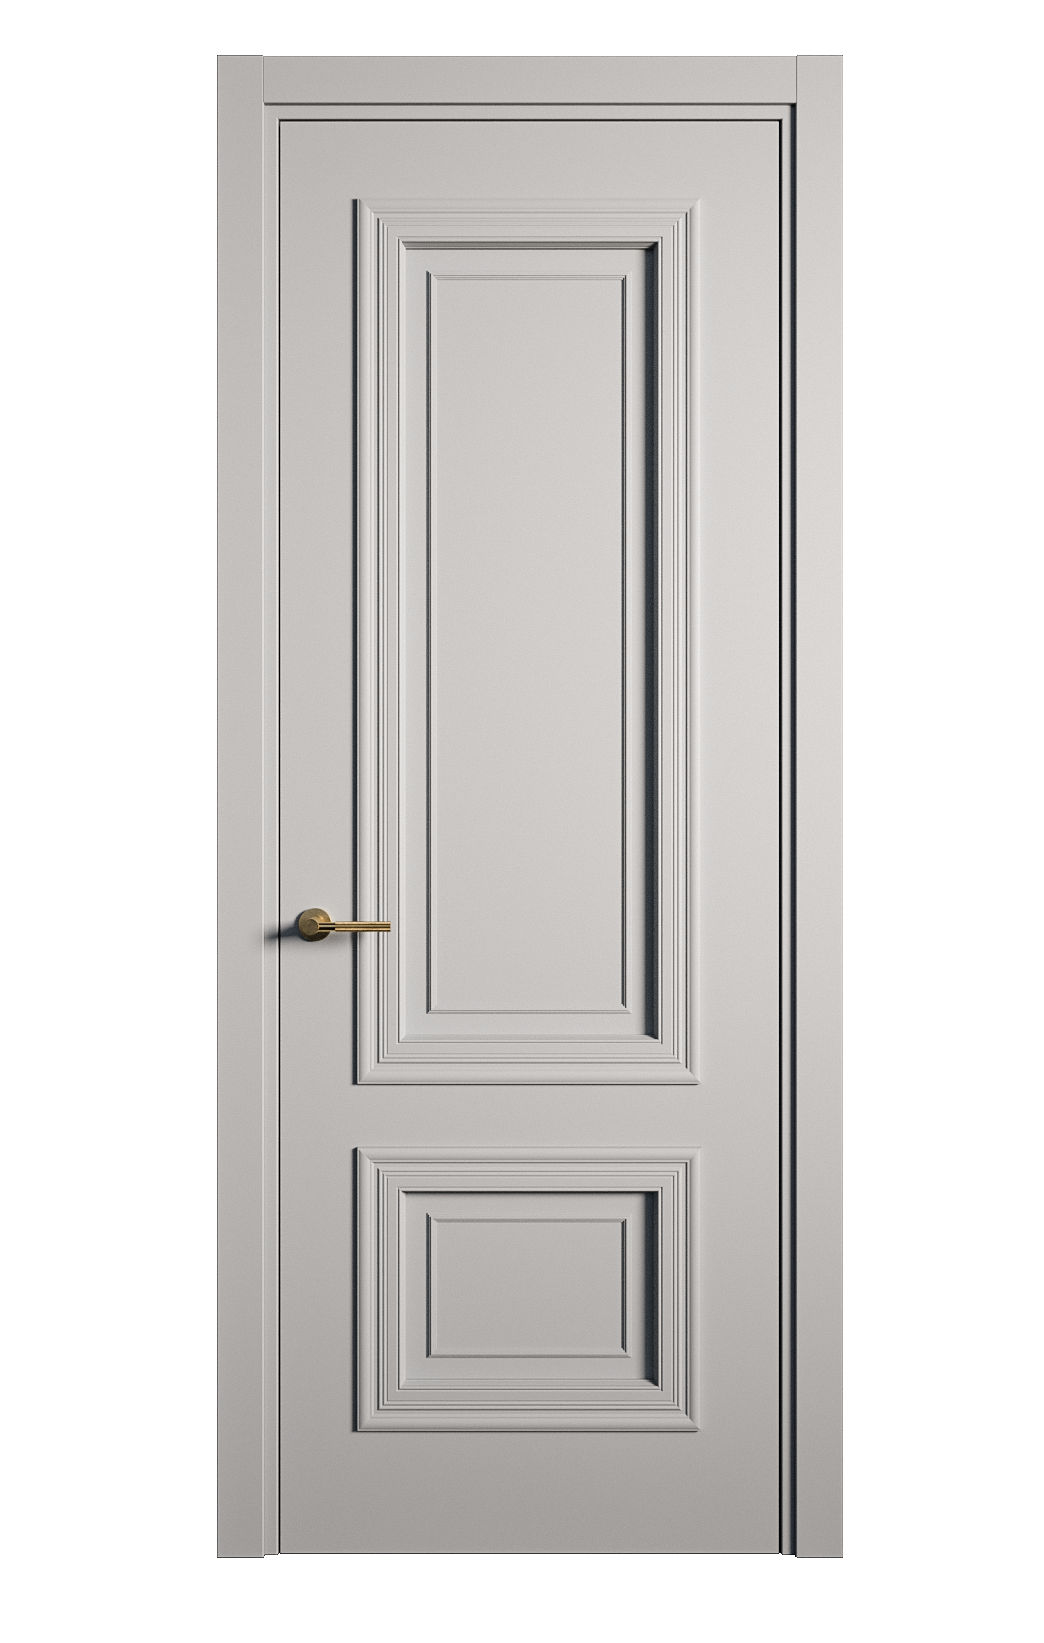 Межкомнатная дверь Мальта-1 глухая эмаль ral 7040 26935